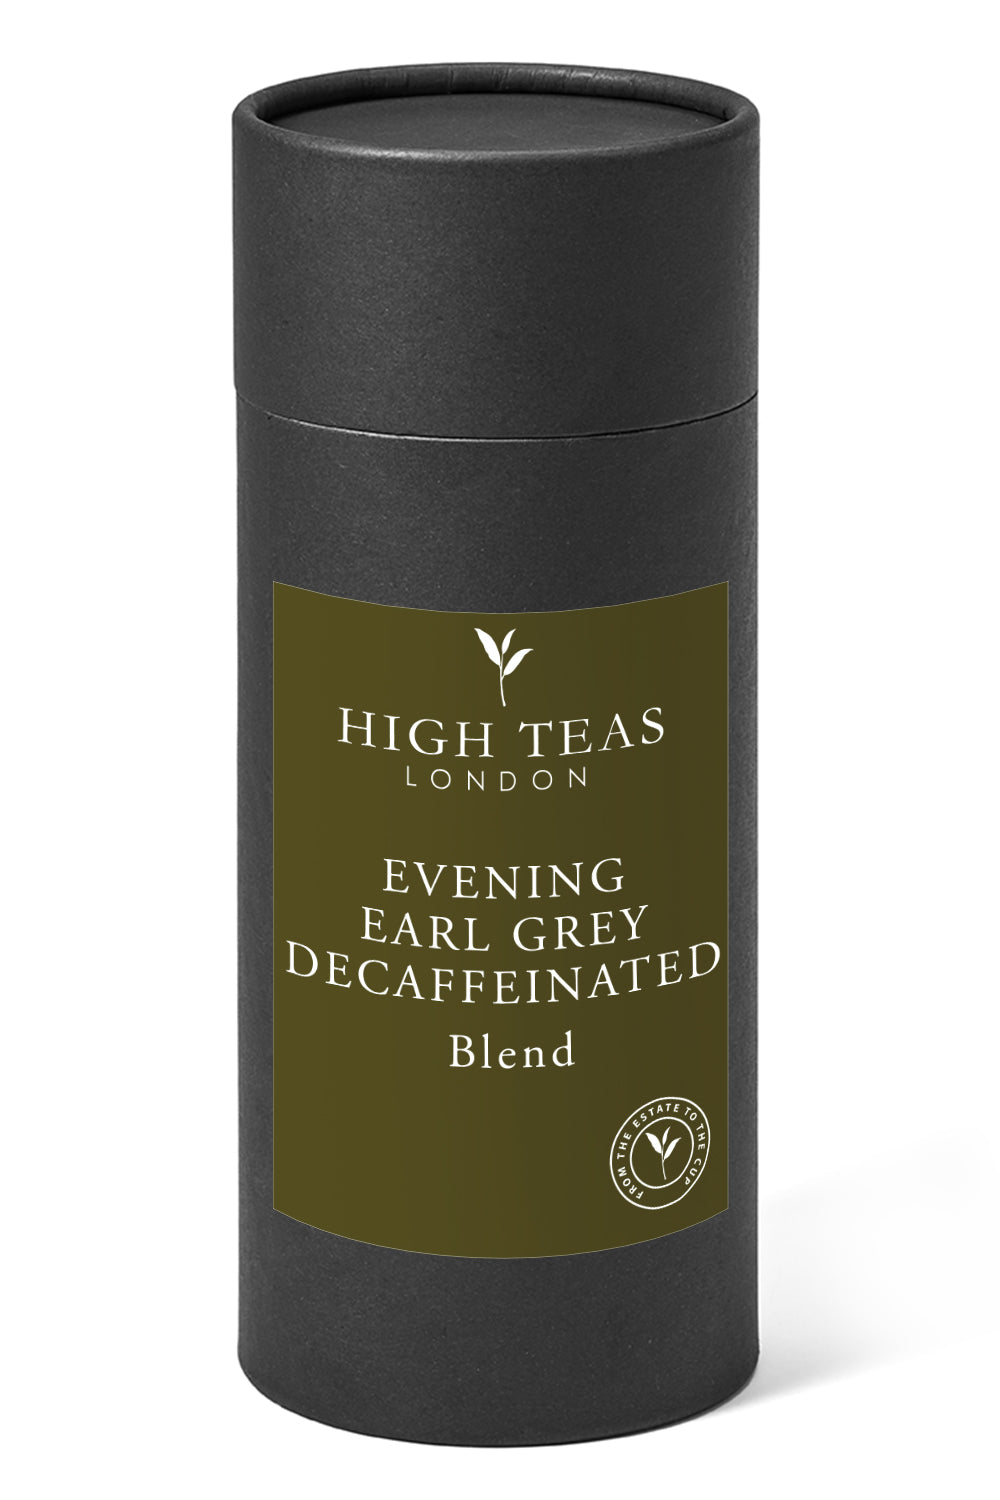 Evening Earl Grey Decaffeinated Leaf-150g gift-Loose Leaf Tea-High Teas